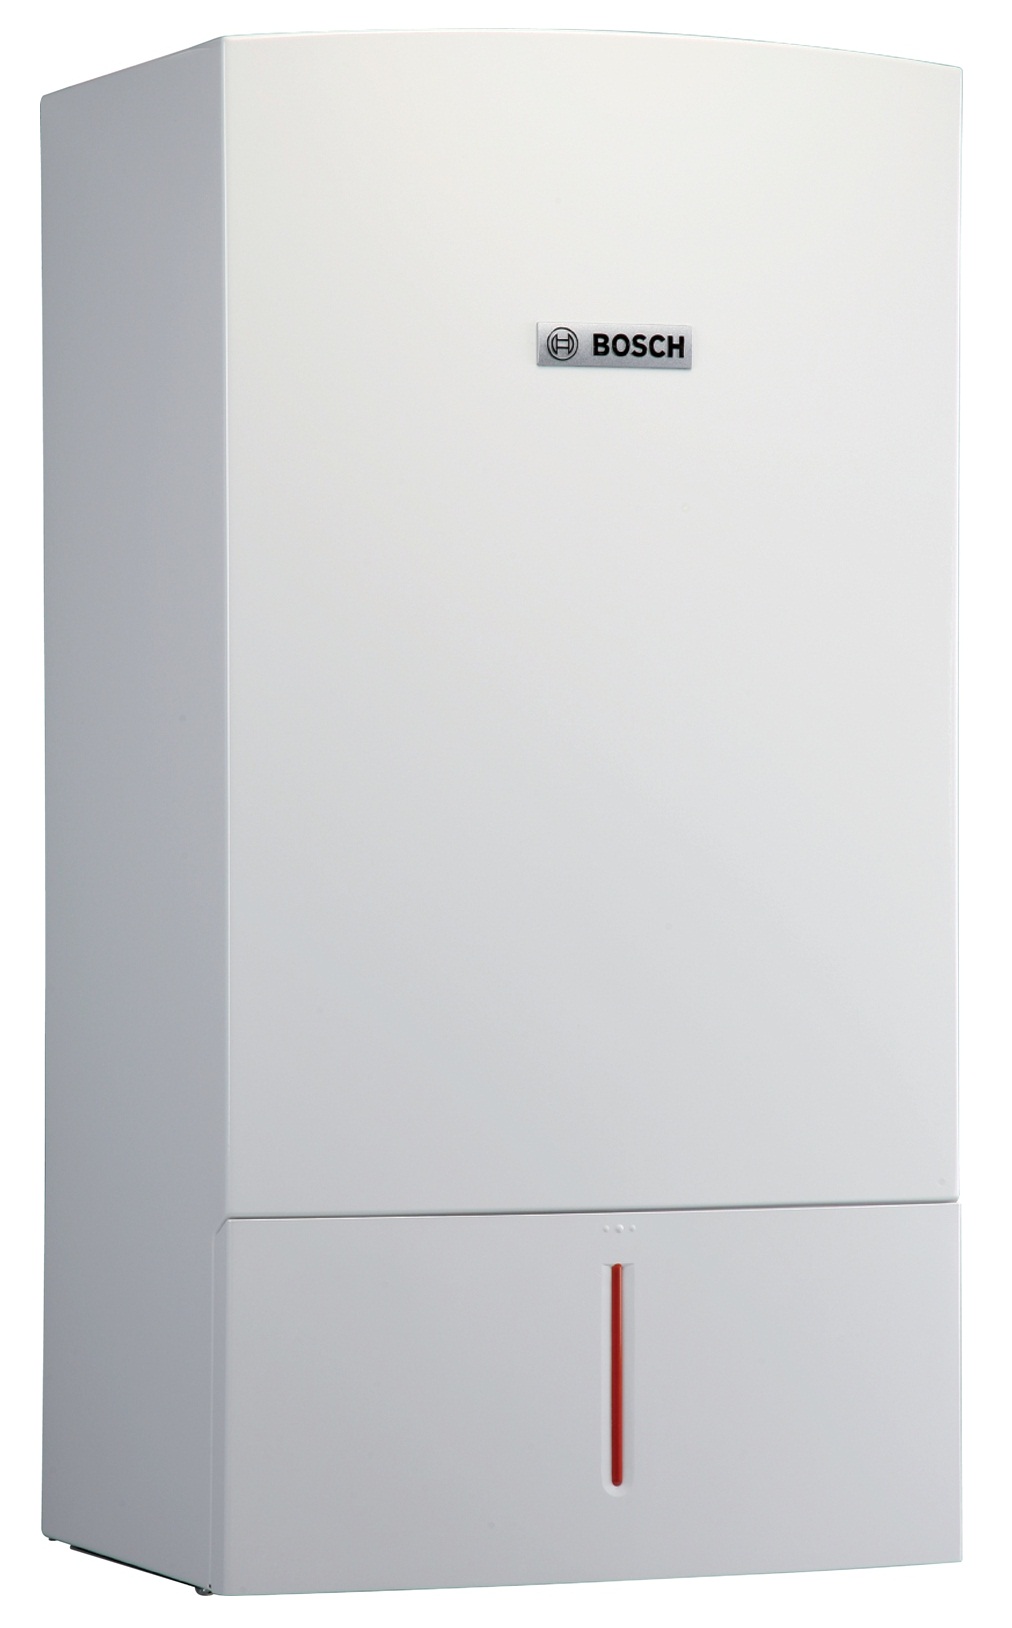 Фото товара Конденсационный газовый котел Bosch Condens 7000 W ZBR 42-3 A (1 контурн.). Изображение №1